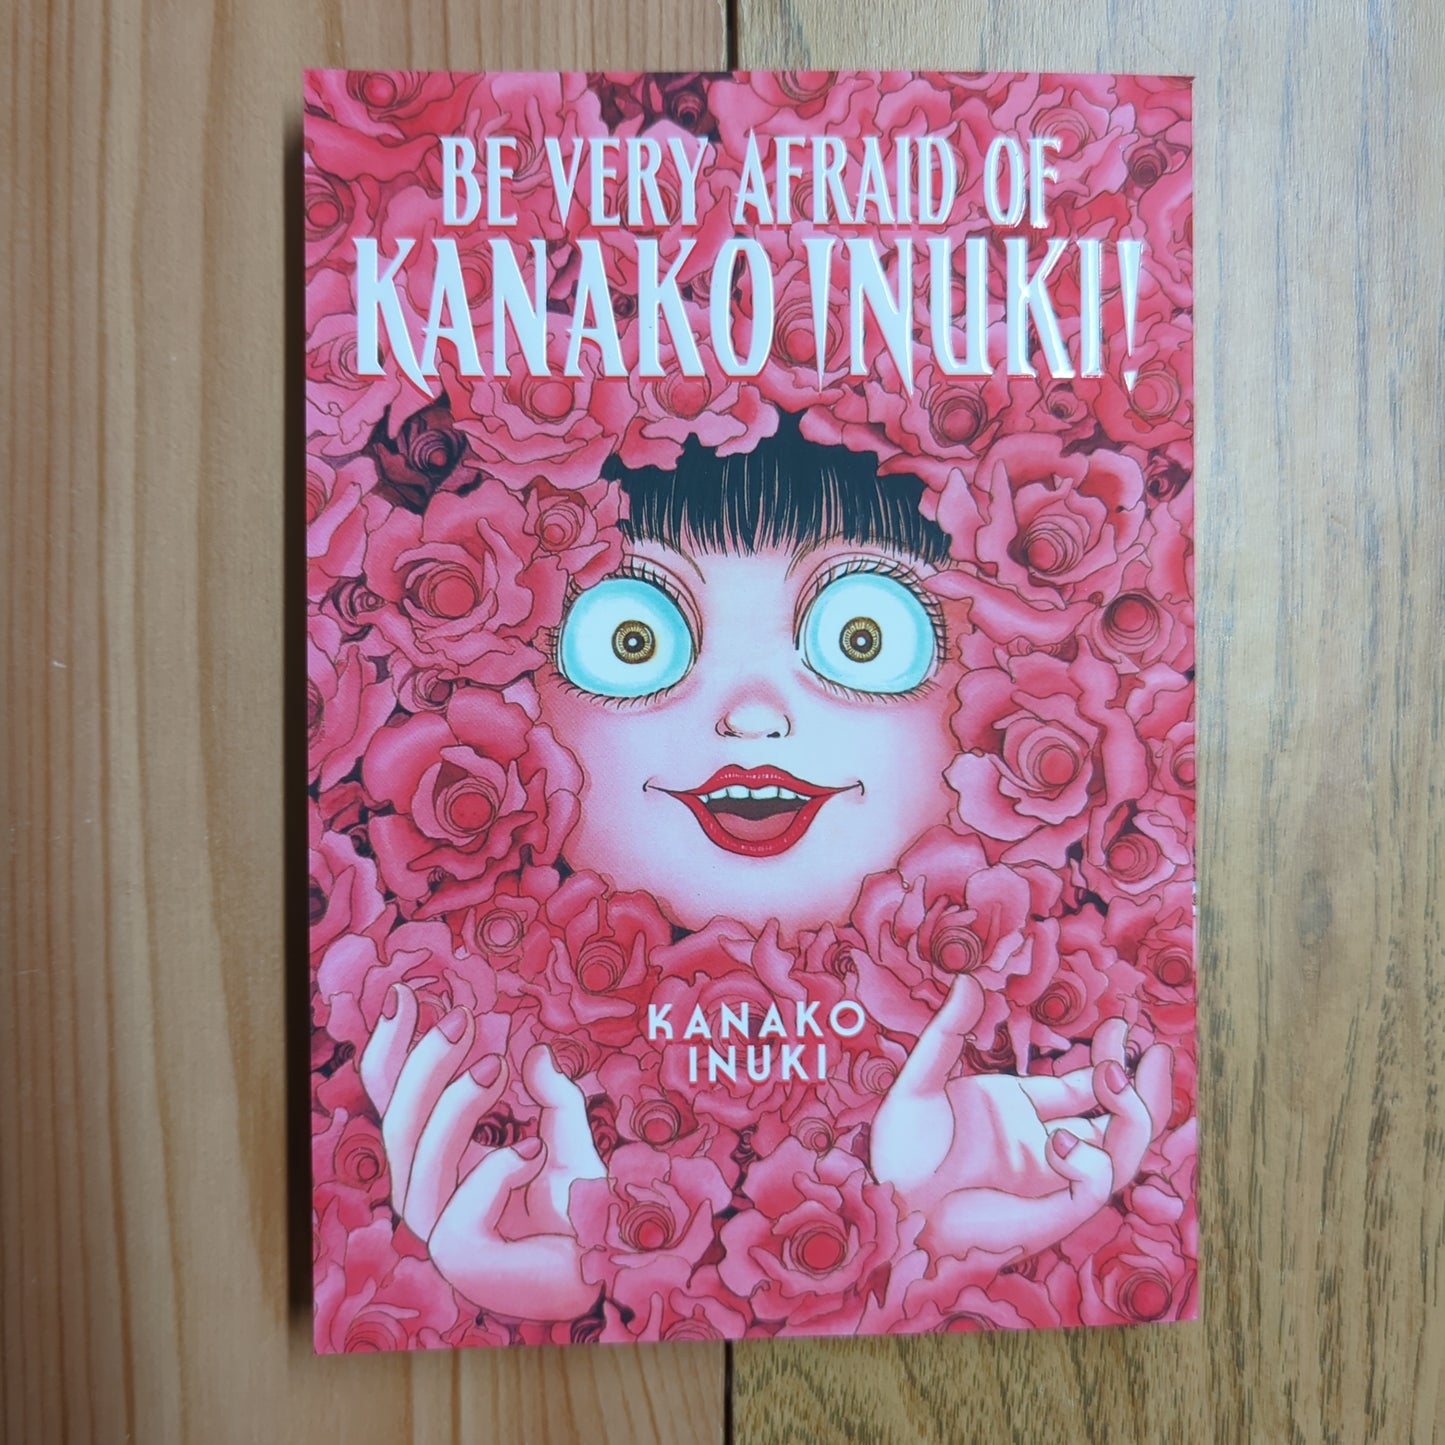 Be Very Afraid of Kanoko Inuki!